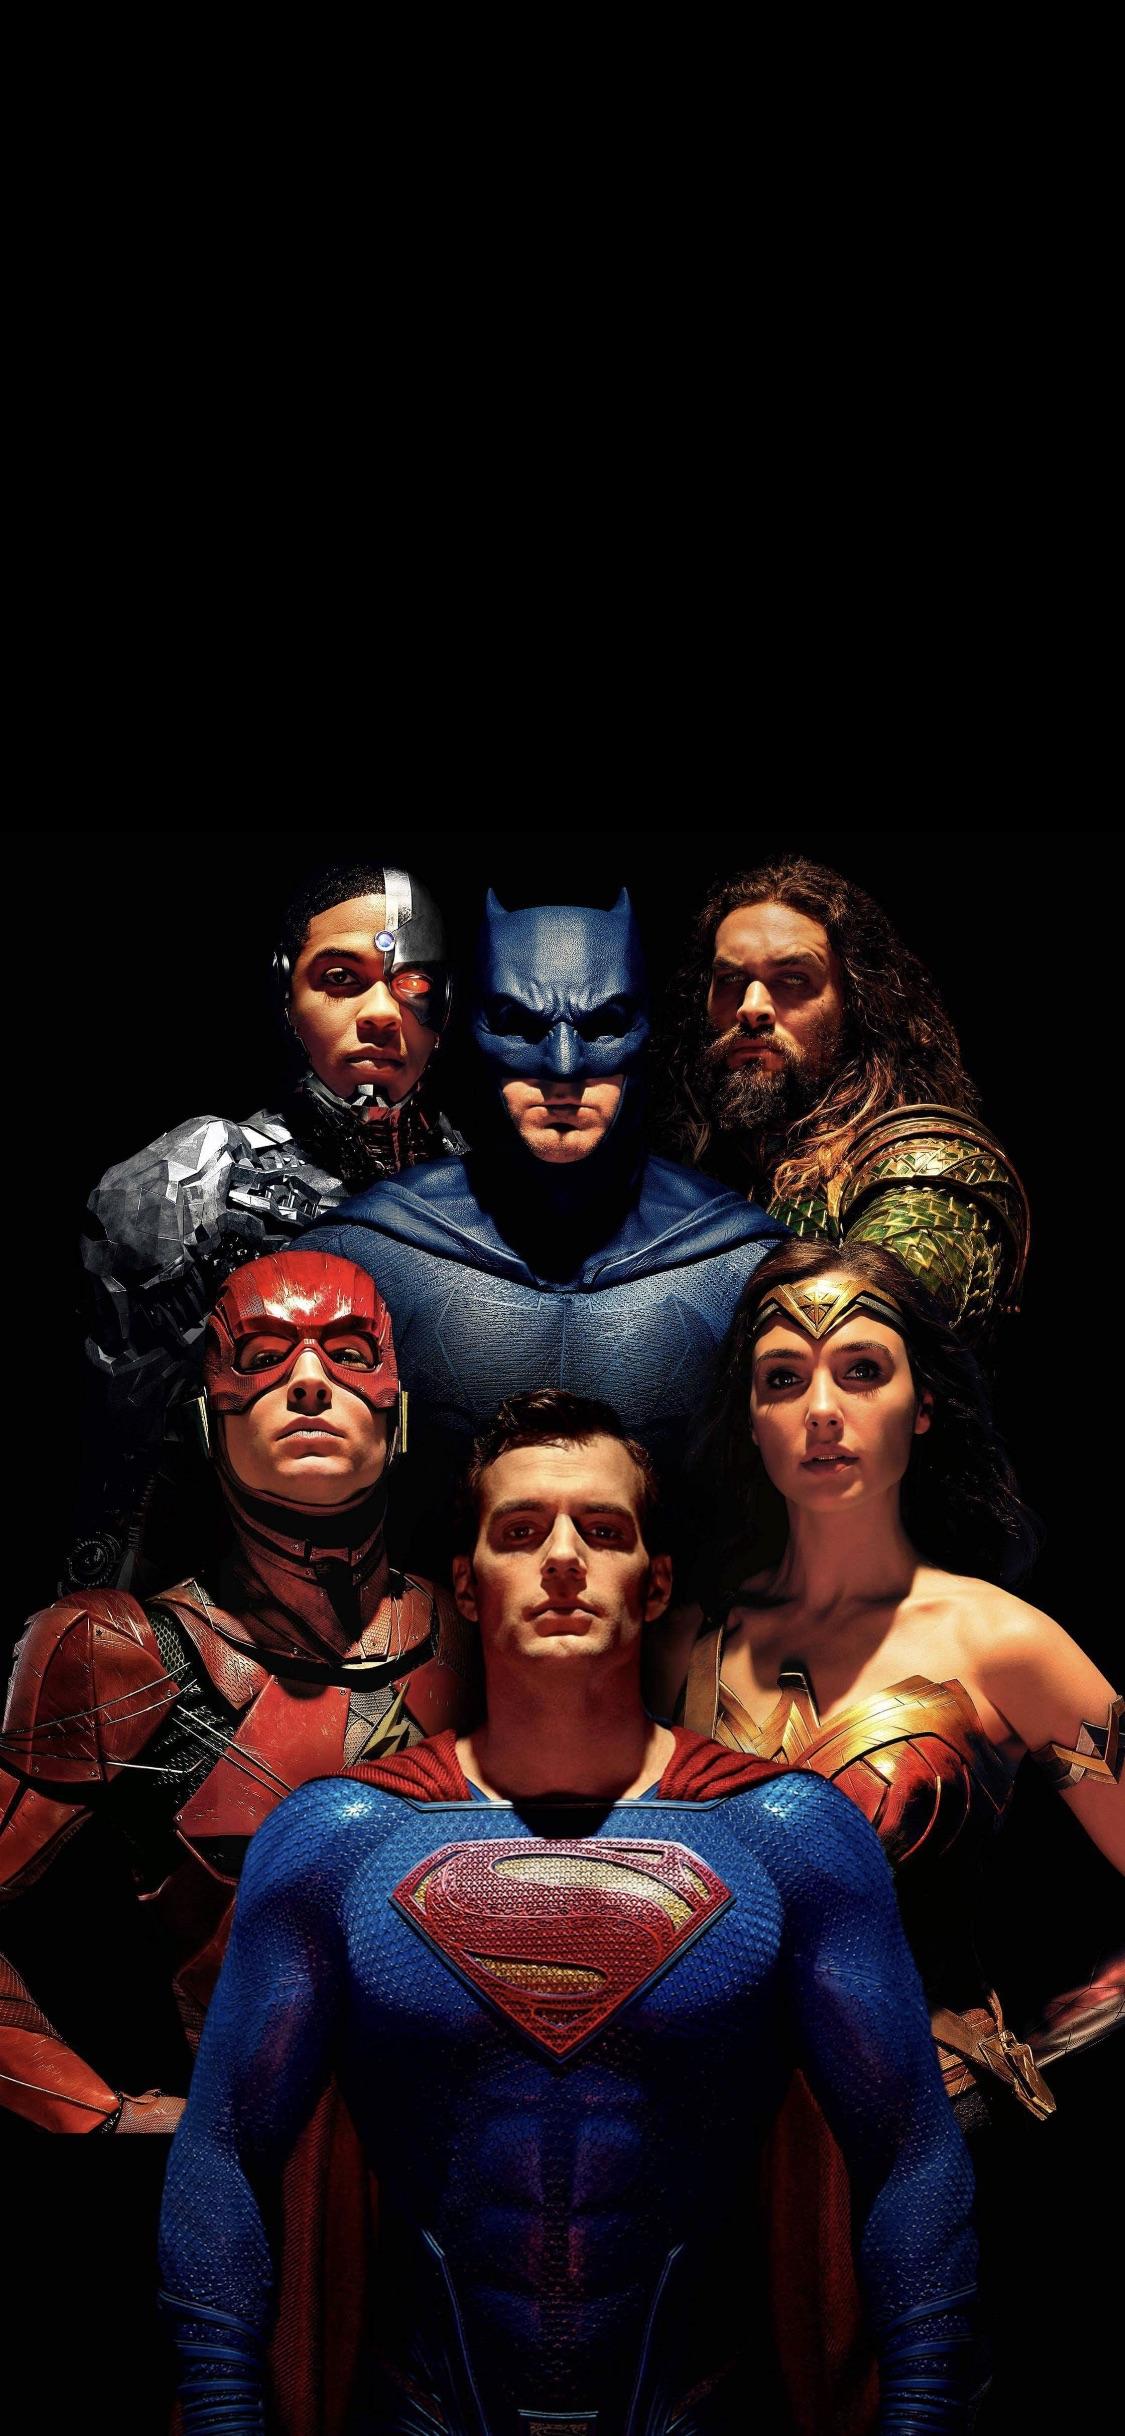 liga de la justicia fondo de pantalla para iphone,superhéroe,héroe,personaje de ficción,superhombre,liga de la justicia